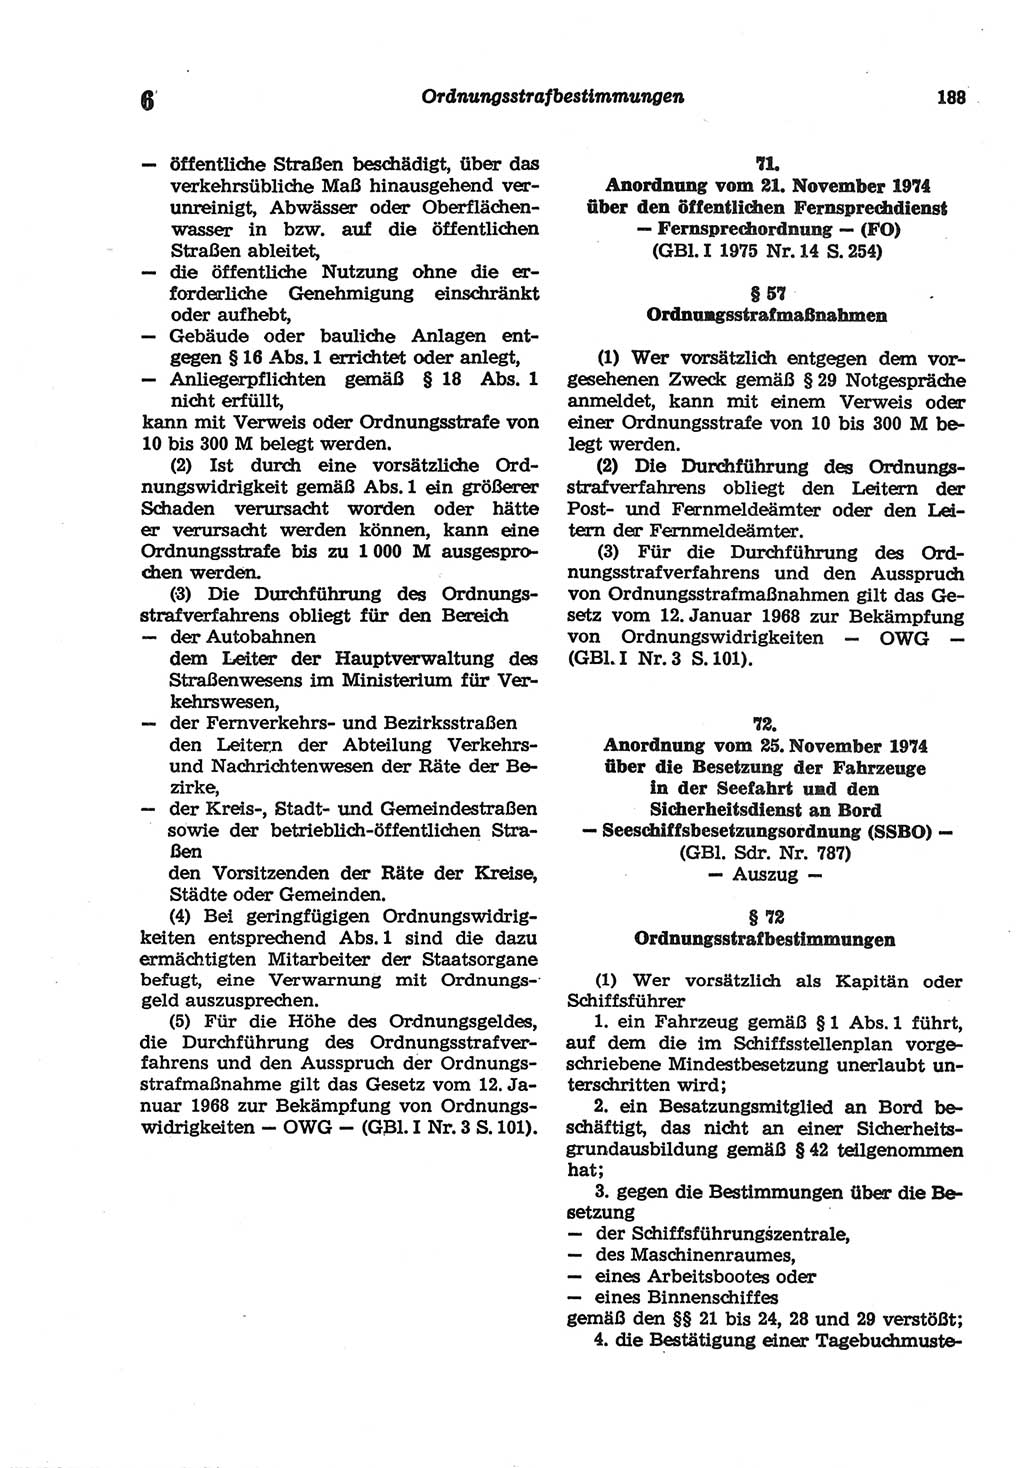 Strafgesetzbuch (StGB) der Deutschen Demokratischen Republik (DDR) und angrenzende Gesetze und Bestimmungen 1977, Seite 188 (StGB DDR Ges. Best. 1977, S. 188)